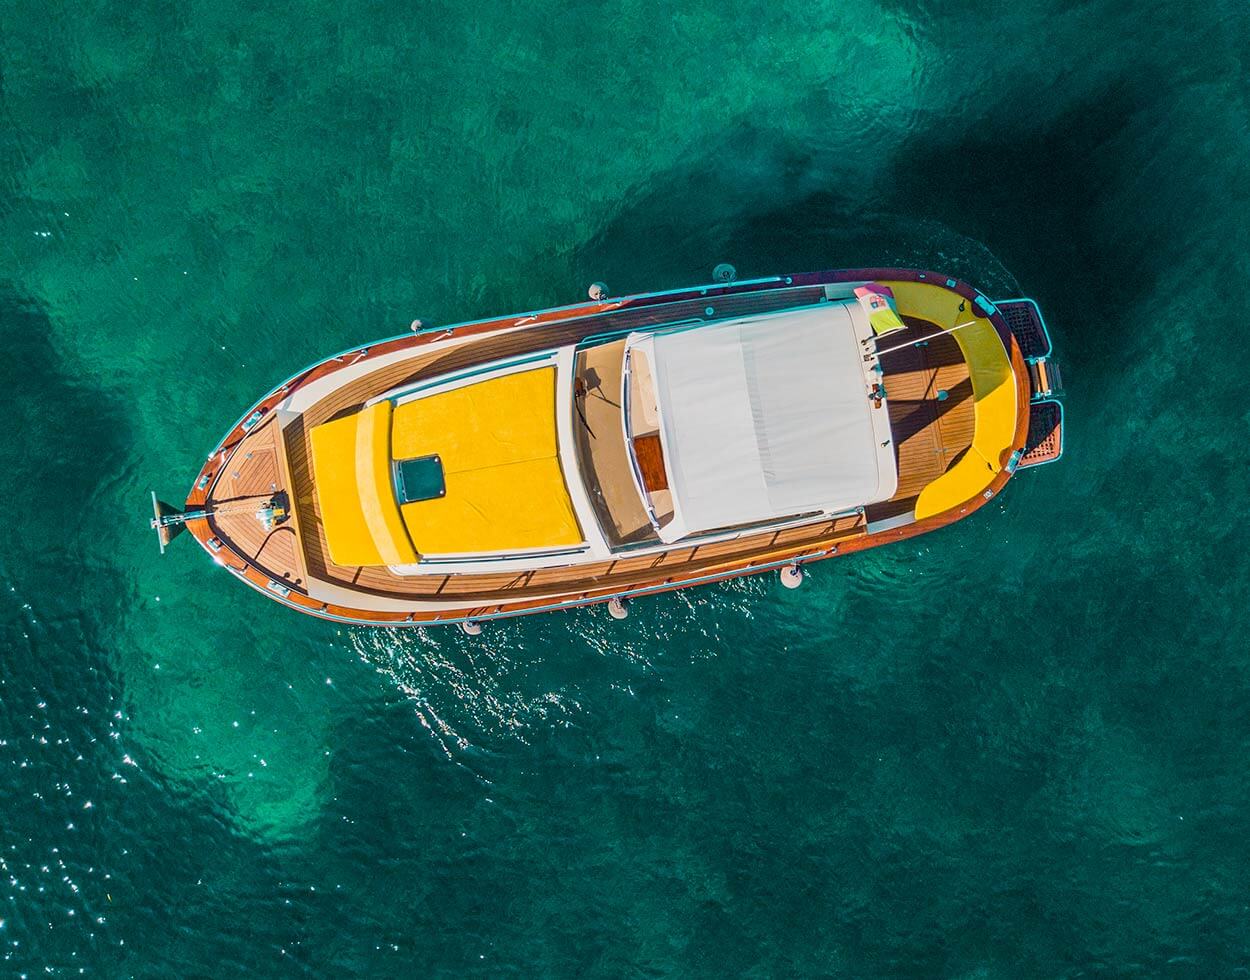 Ischia Boat Rental